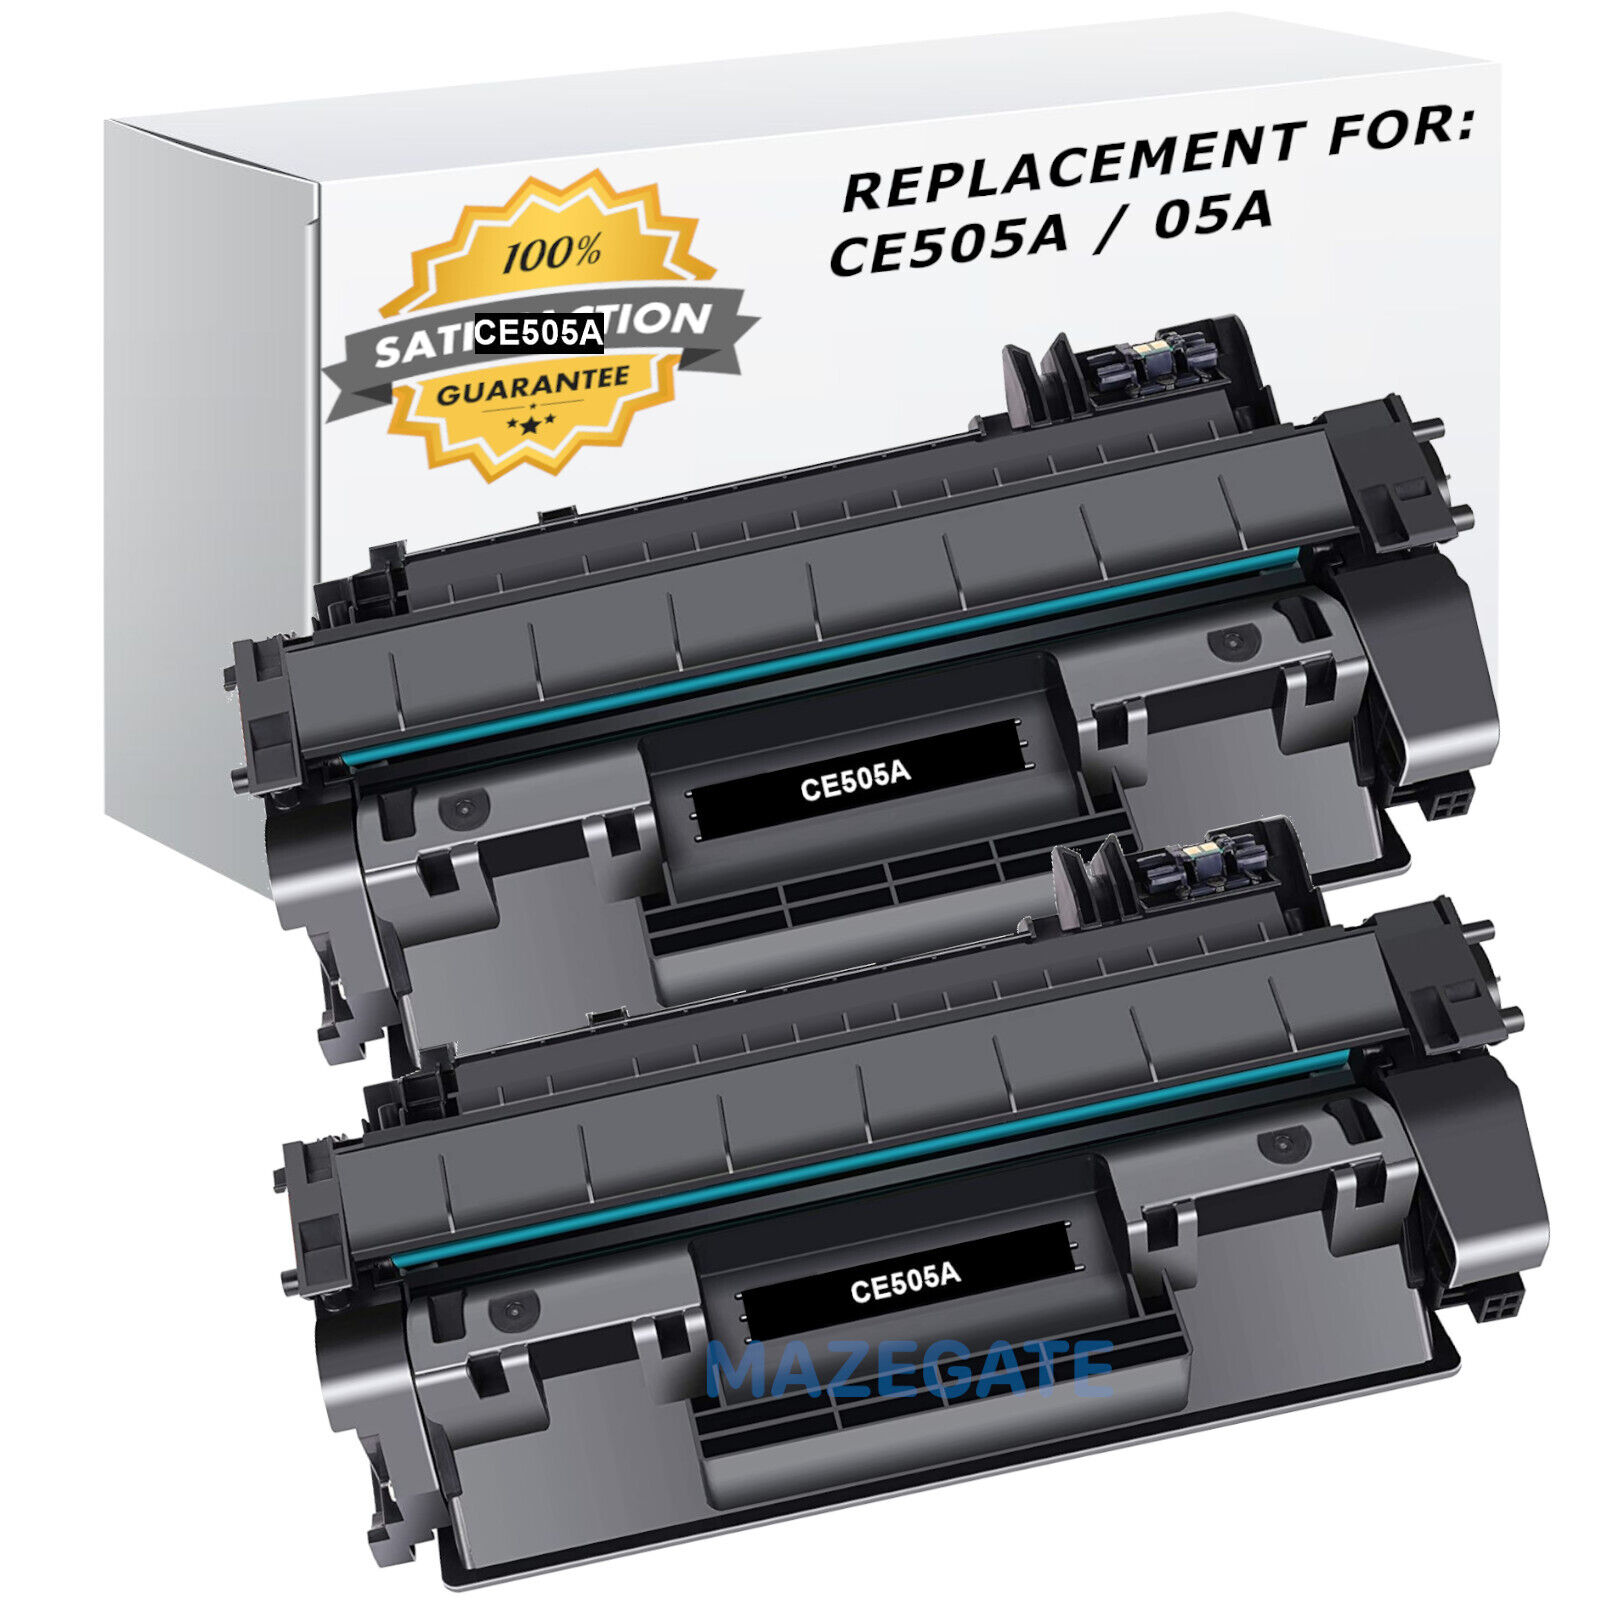 2-Pack CE505A 05A Toner Cartridges For HP LaserJet P2030 P2035 P2035n P2055dn